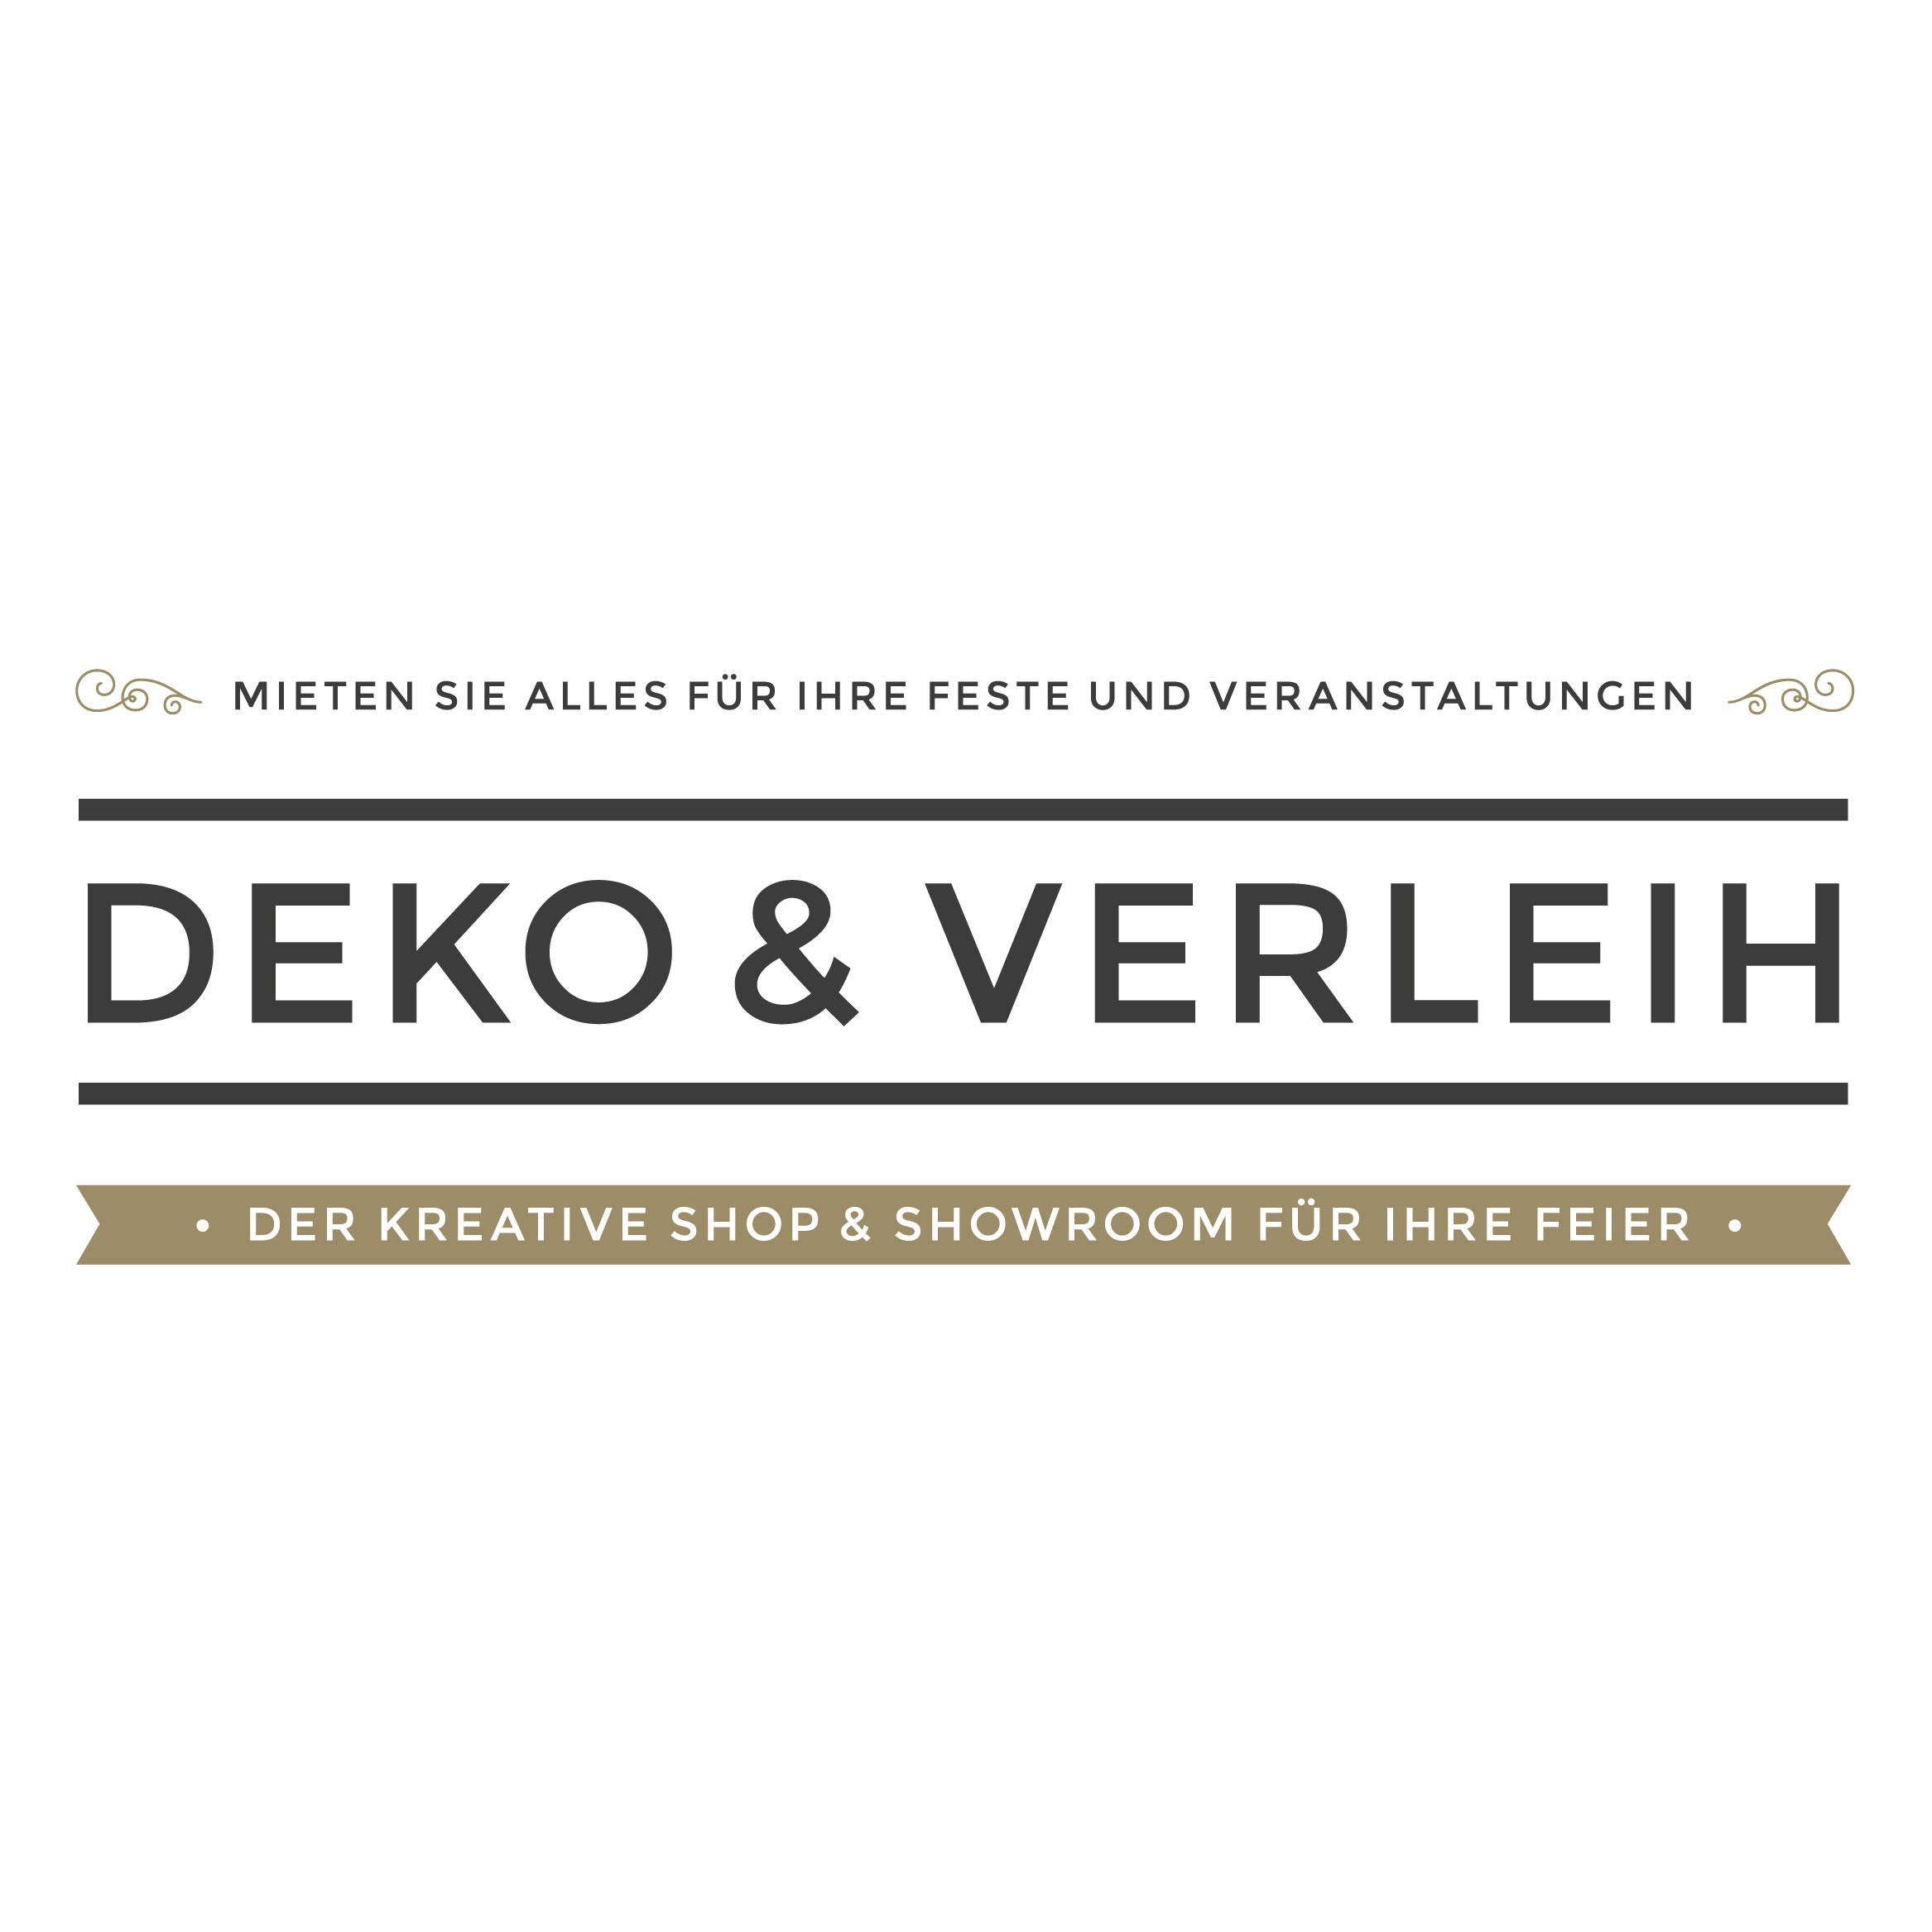 Deko & Verleih in Esslingen